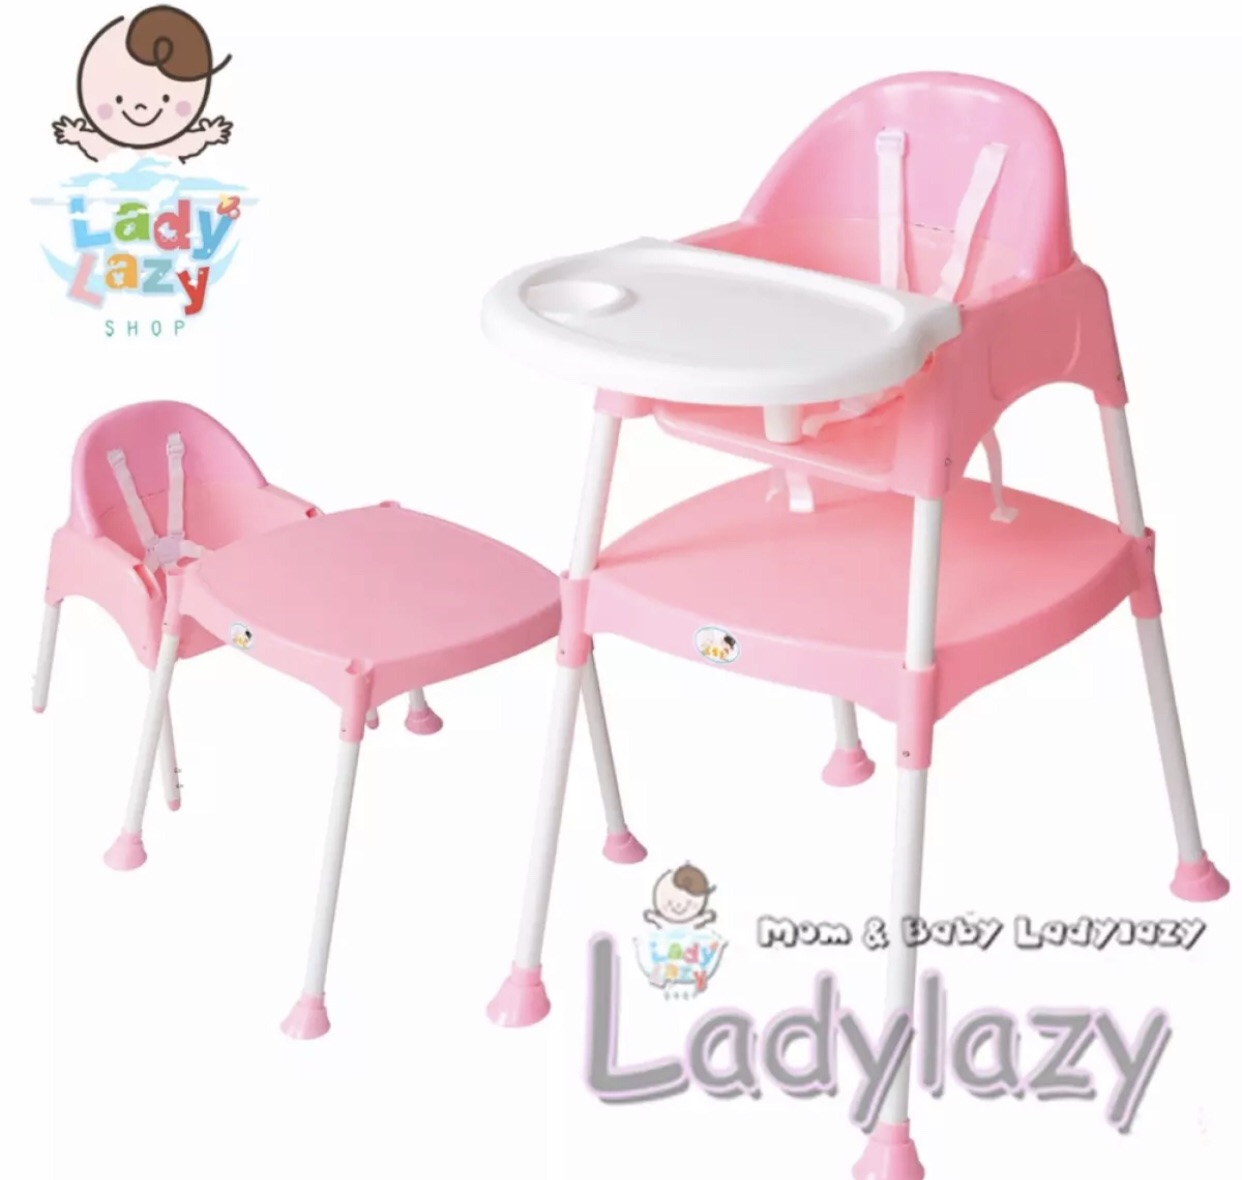 Ladylazy โต๊ะเก้าอี้กินข้าวเด็กทรงสูง 3in1 สีชมพู